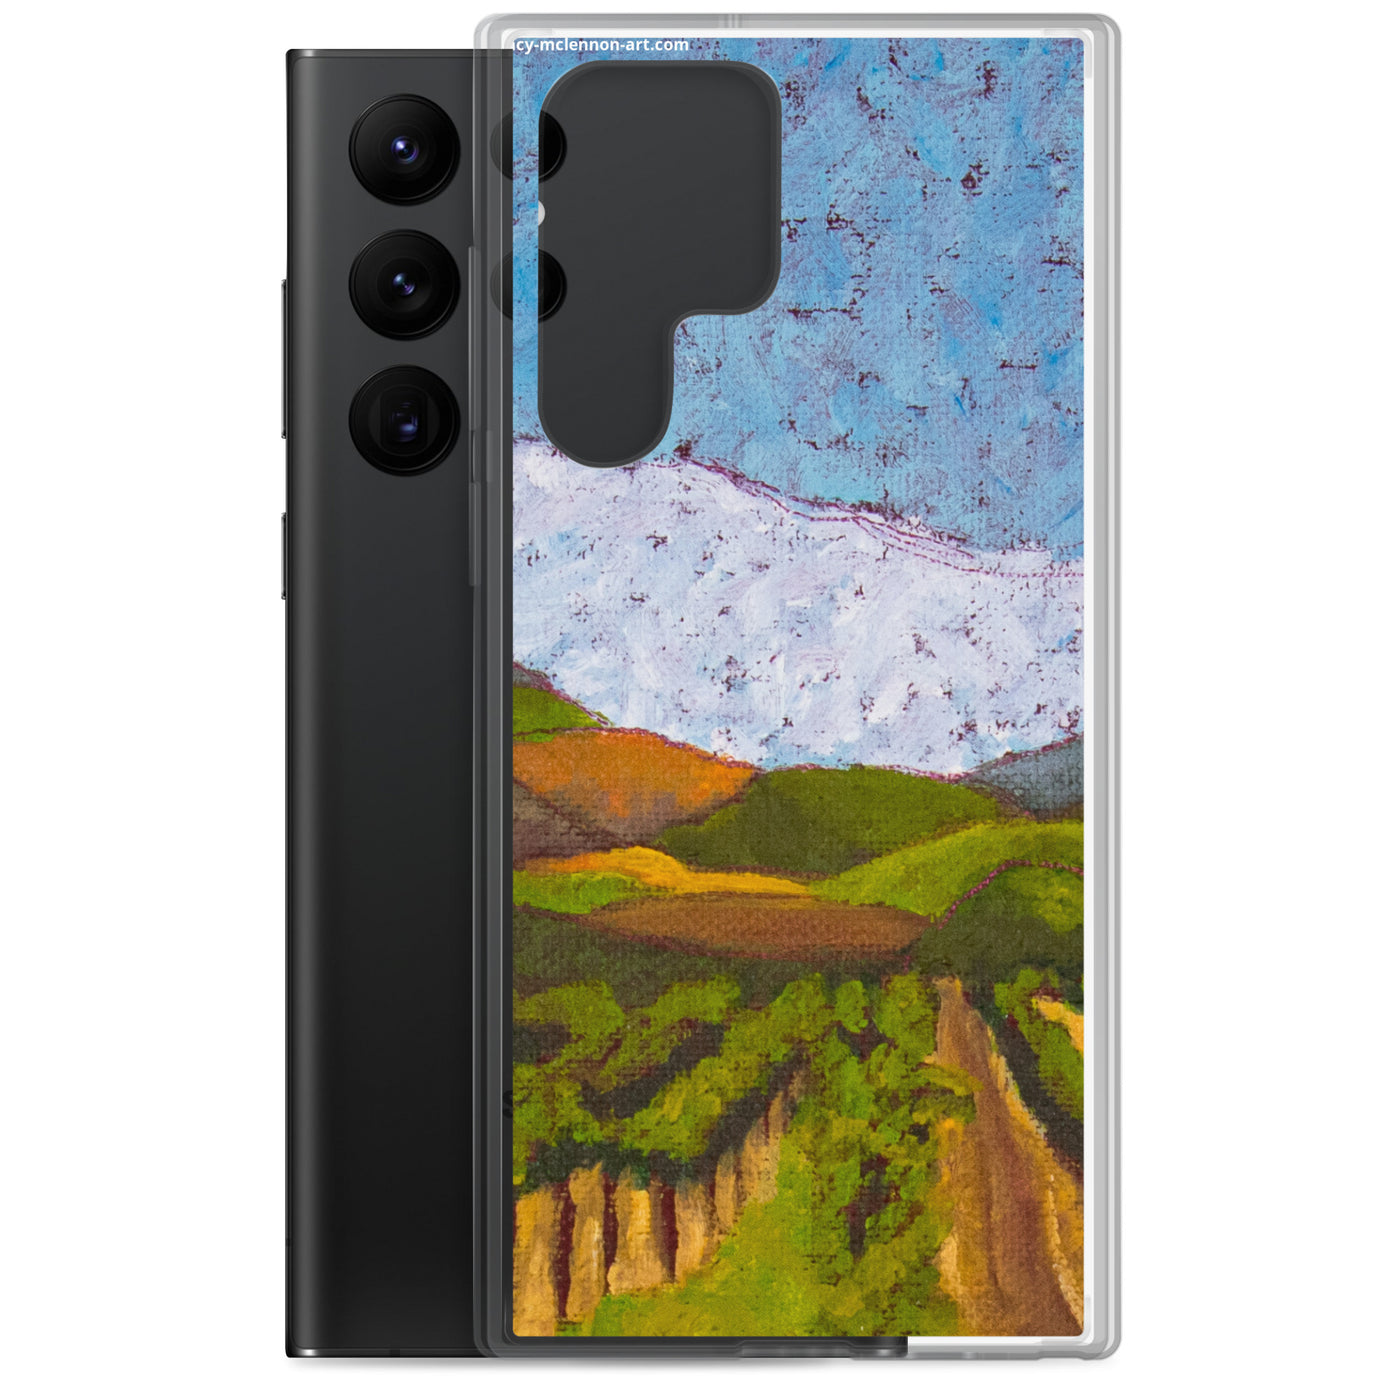 Samsung® Case - Napa Valley vineyard hills